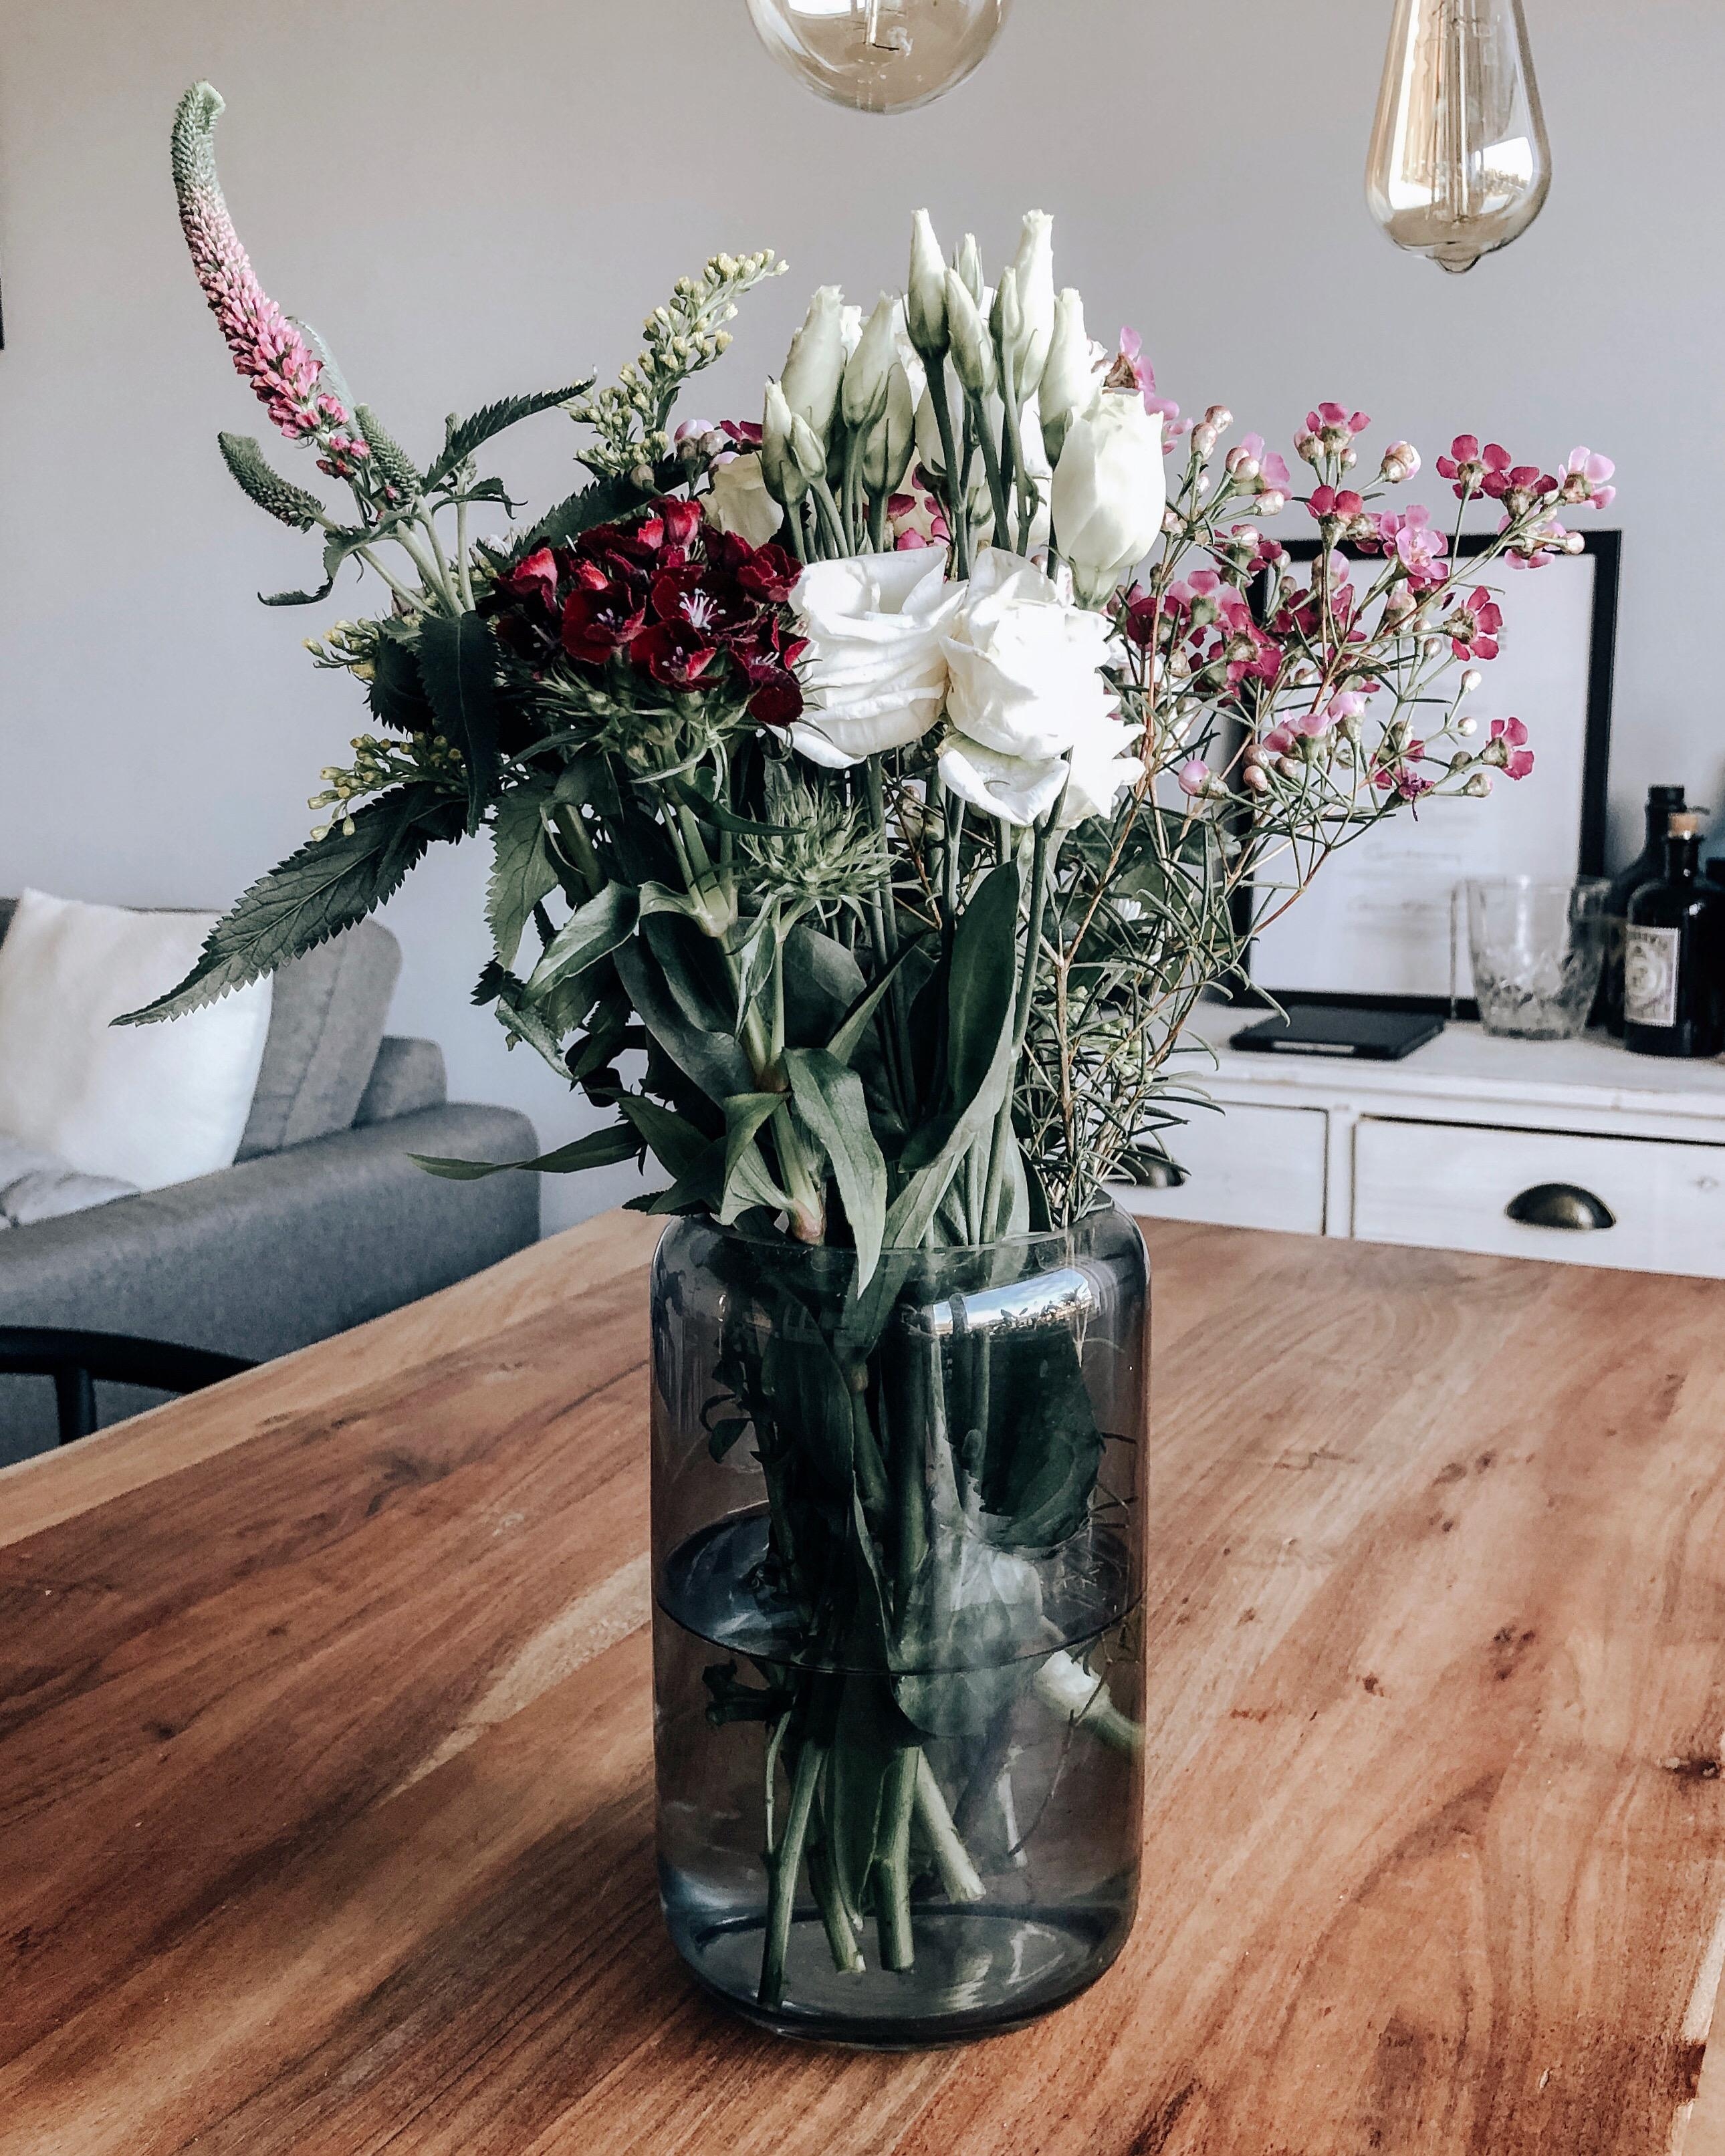 Blumen machen jeden Tag schöner😍 #flowers #freshflowers #vase #interiorblogger #meinzuhause #blumenliebe